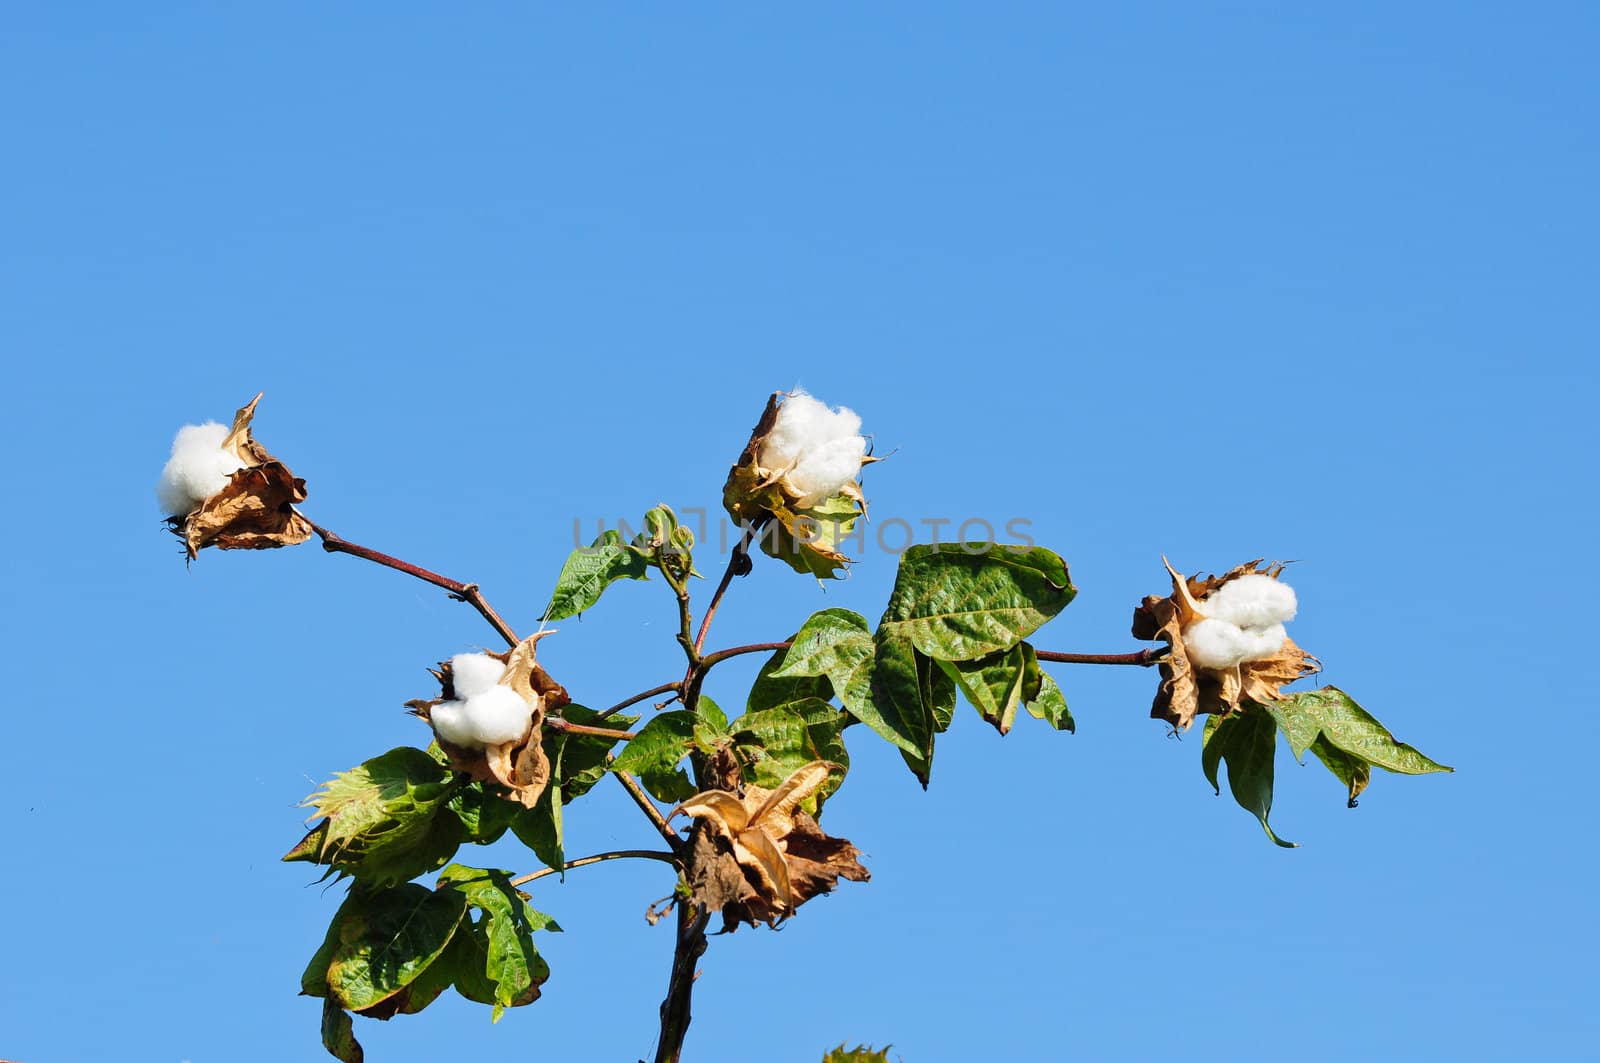 cotton flower in thailand